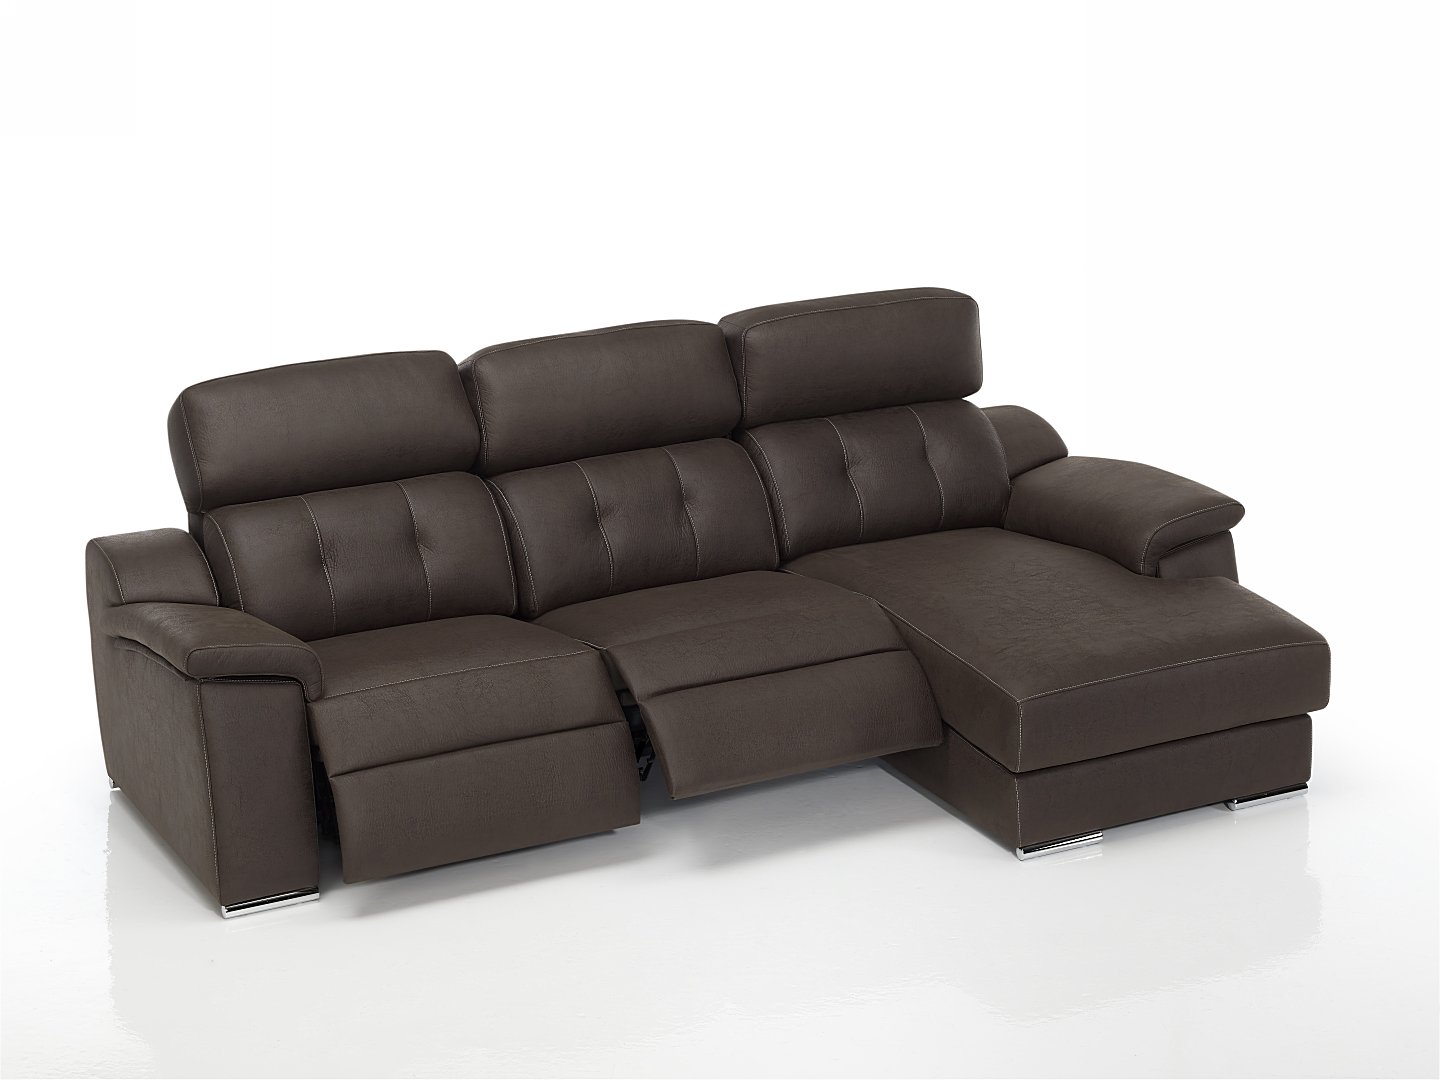 Coimbra sofá relax motorizado 002 by Verazzo Design en muebles antoñán® León